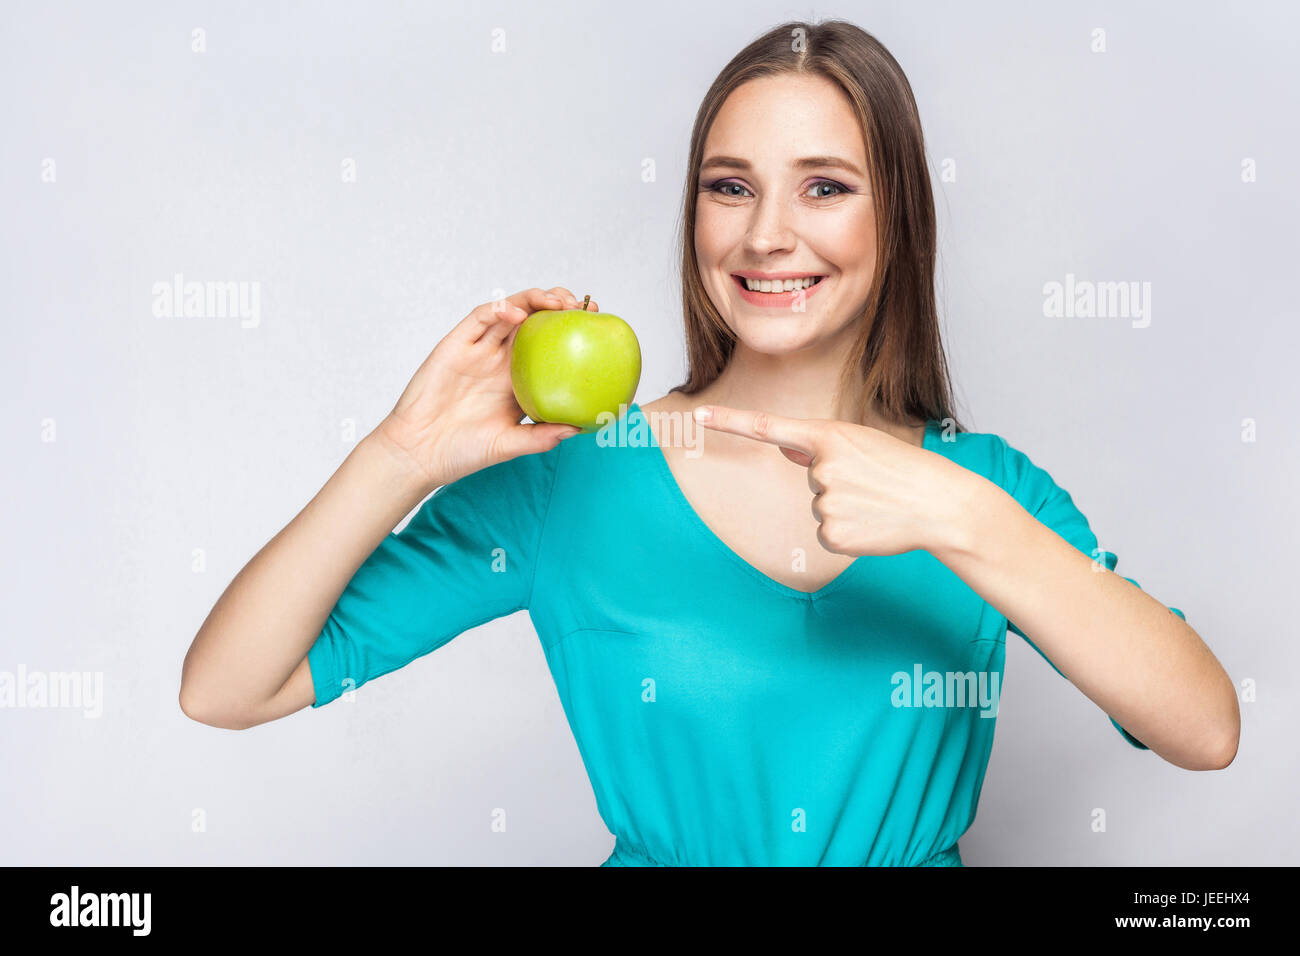 Junge schöne Frau mit Sommersprossen und grünes Kleid hält Apfel und deutete mit dem Finger. Studioaufnahme, isoliert auf hellgrauen Hintergrund. Stockfoto